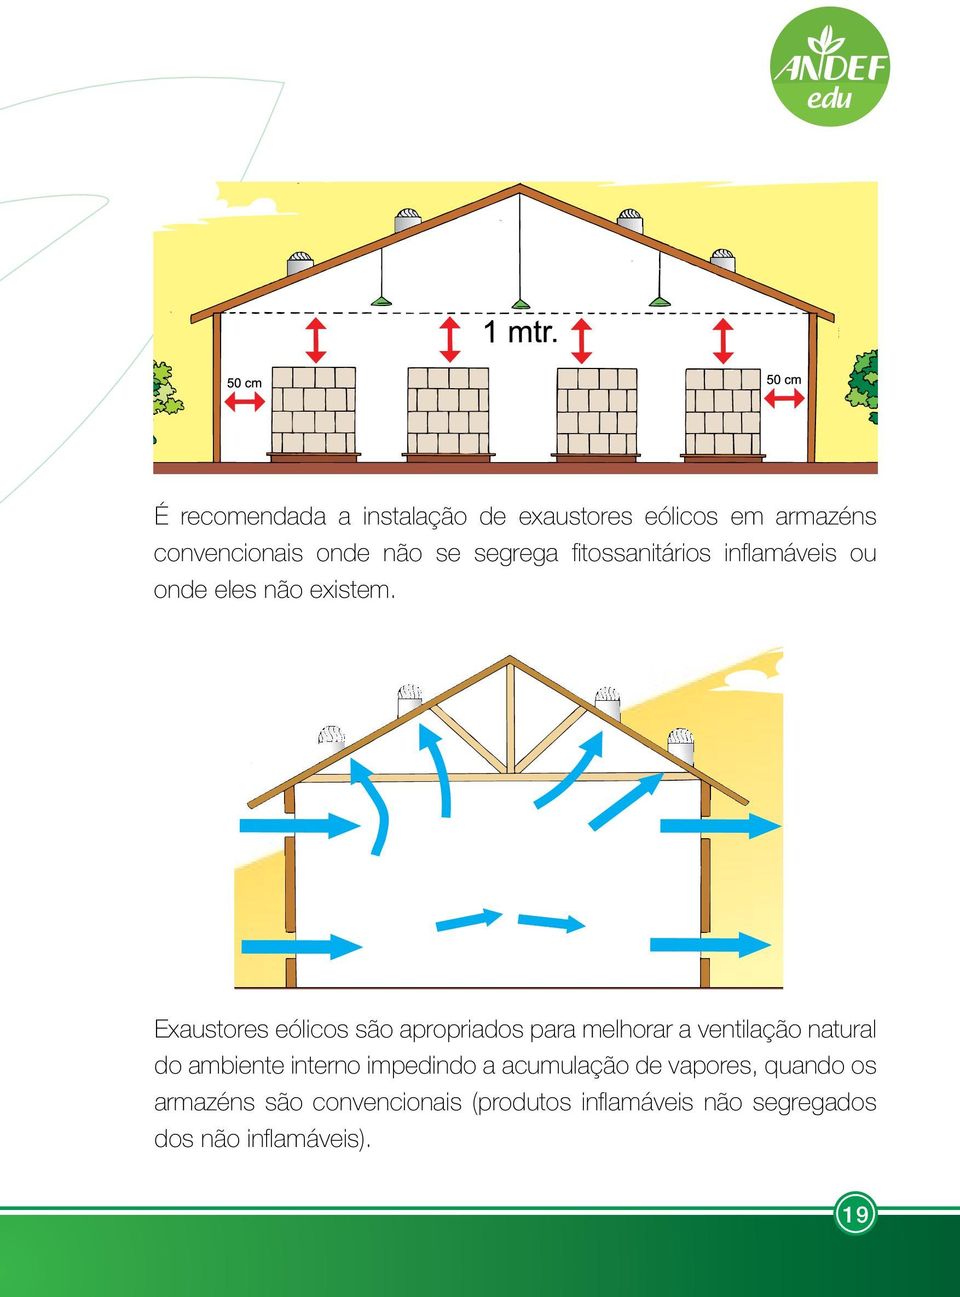 Exaustores eólicos são apropriados para melhorar a ventilação natural do ambiente interno